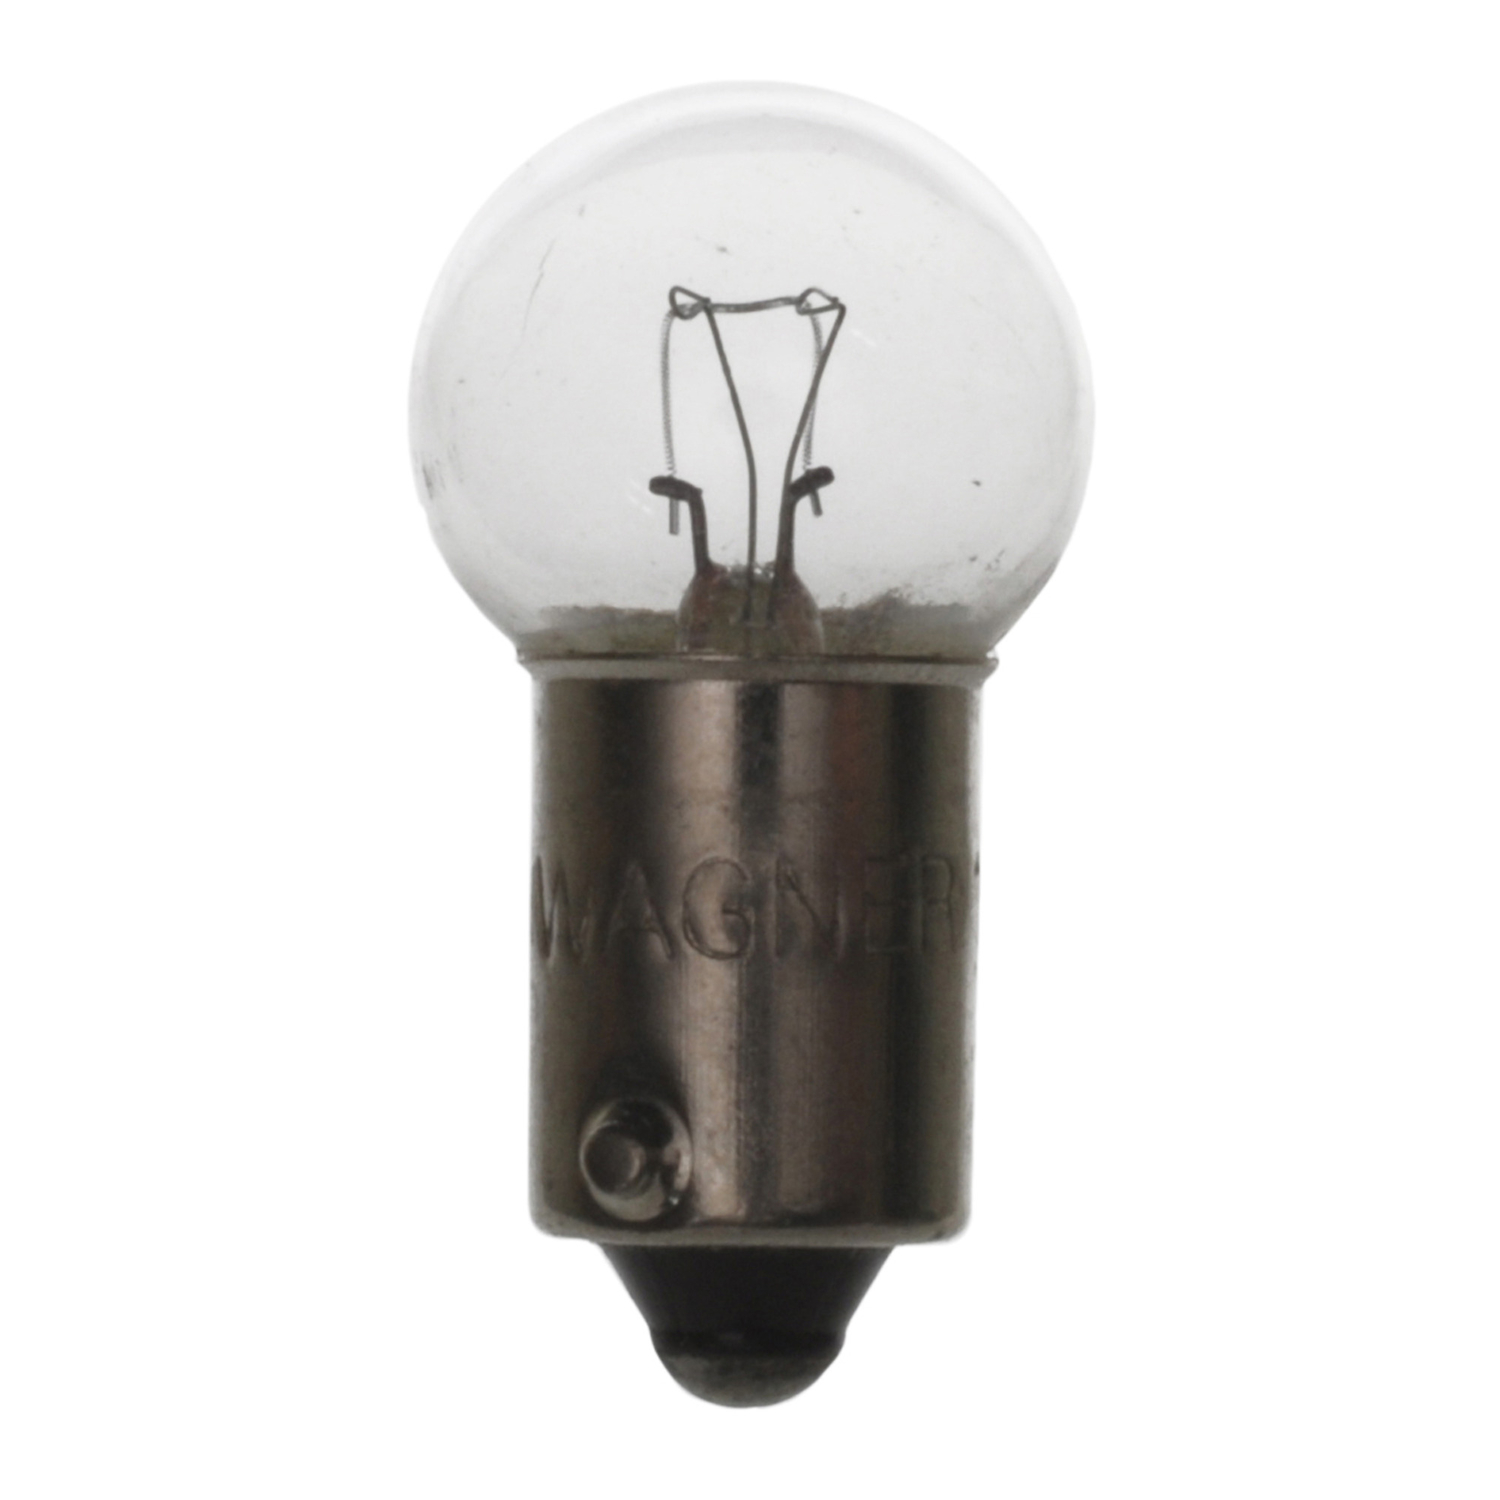 WAGNER LIGHTING - Tail Light Bulb - WLP 1895